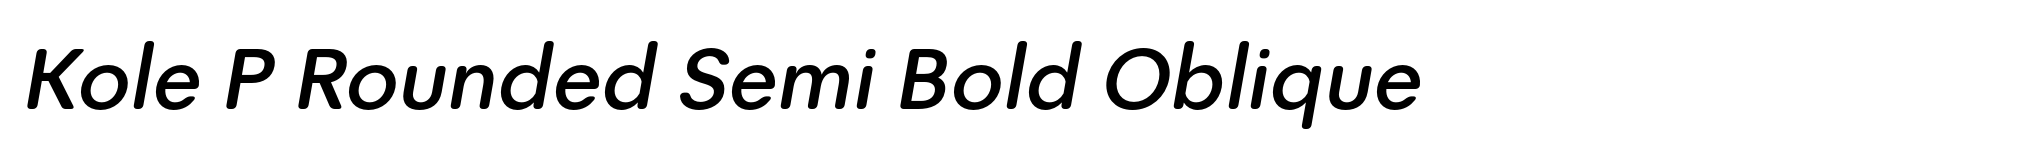 Kole P Rounded Semi Bold Oblique image